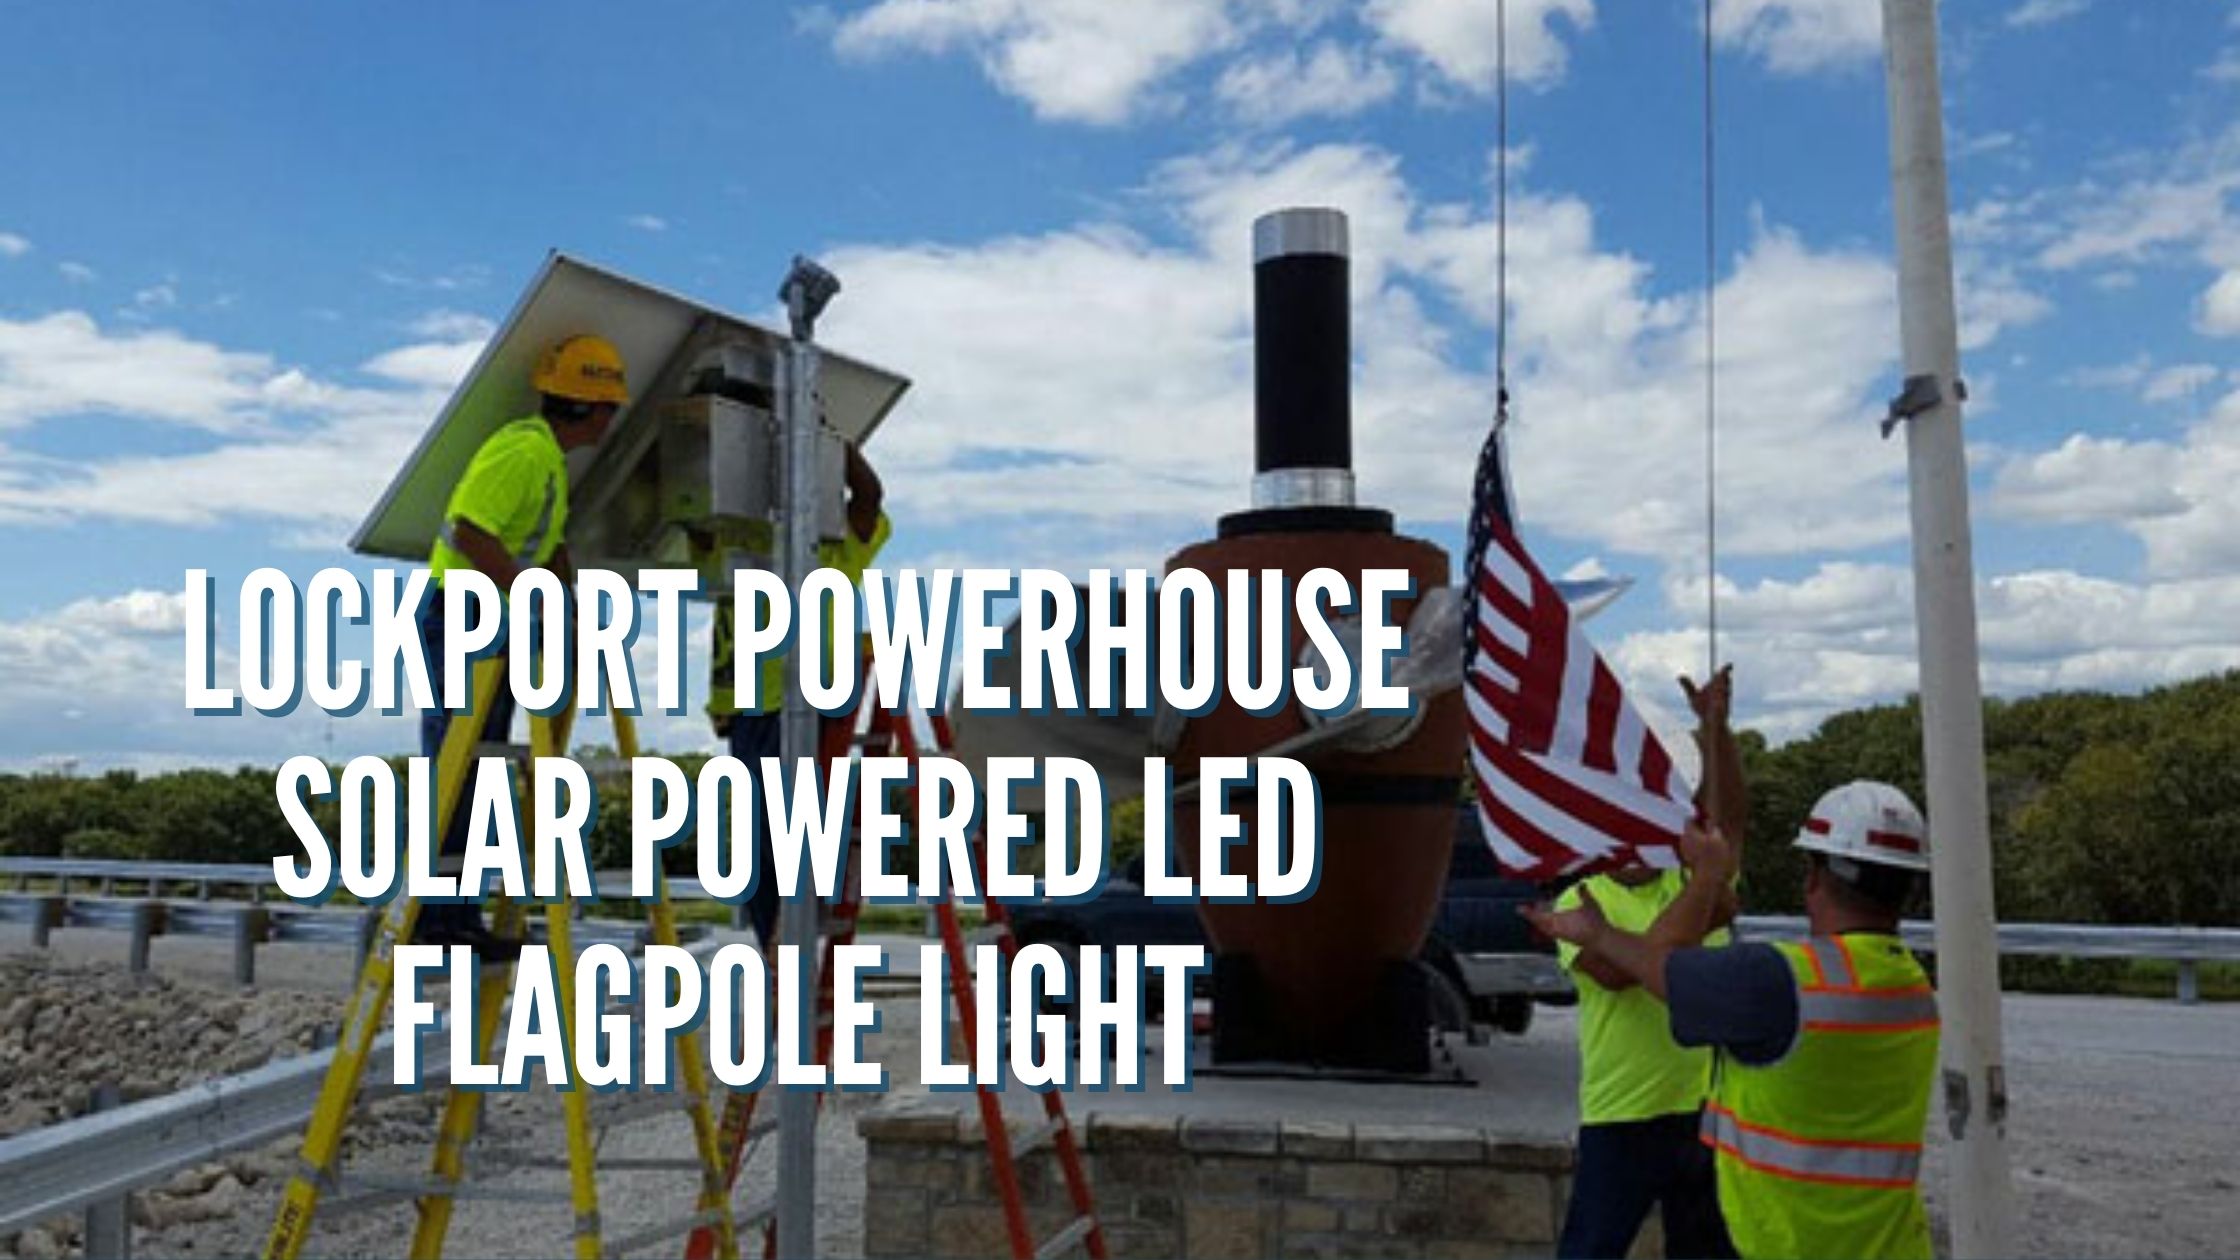 Lockport Powerhouse Solar Powered LED Flagpole Light